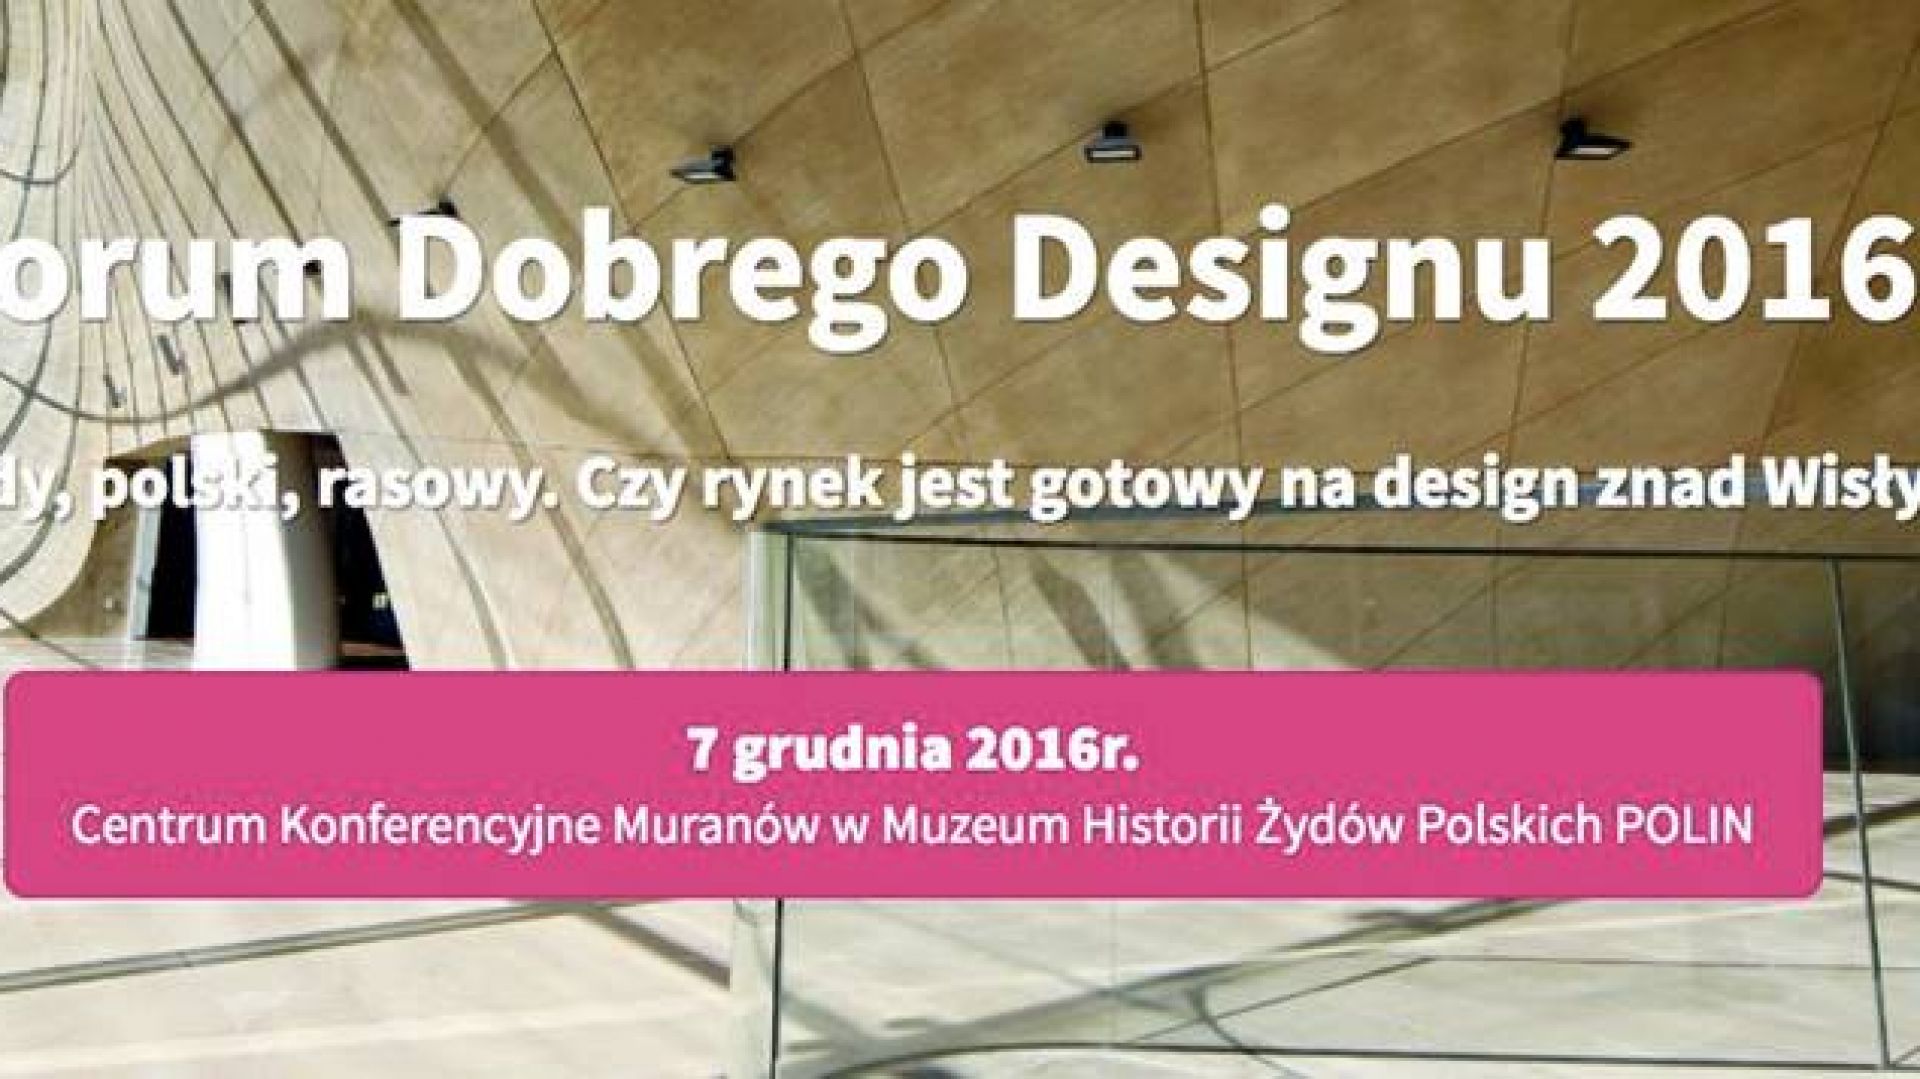 Zapraszamy na Forum Dobrego Designu 2016